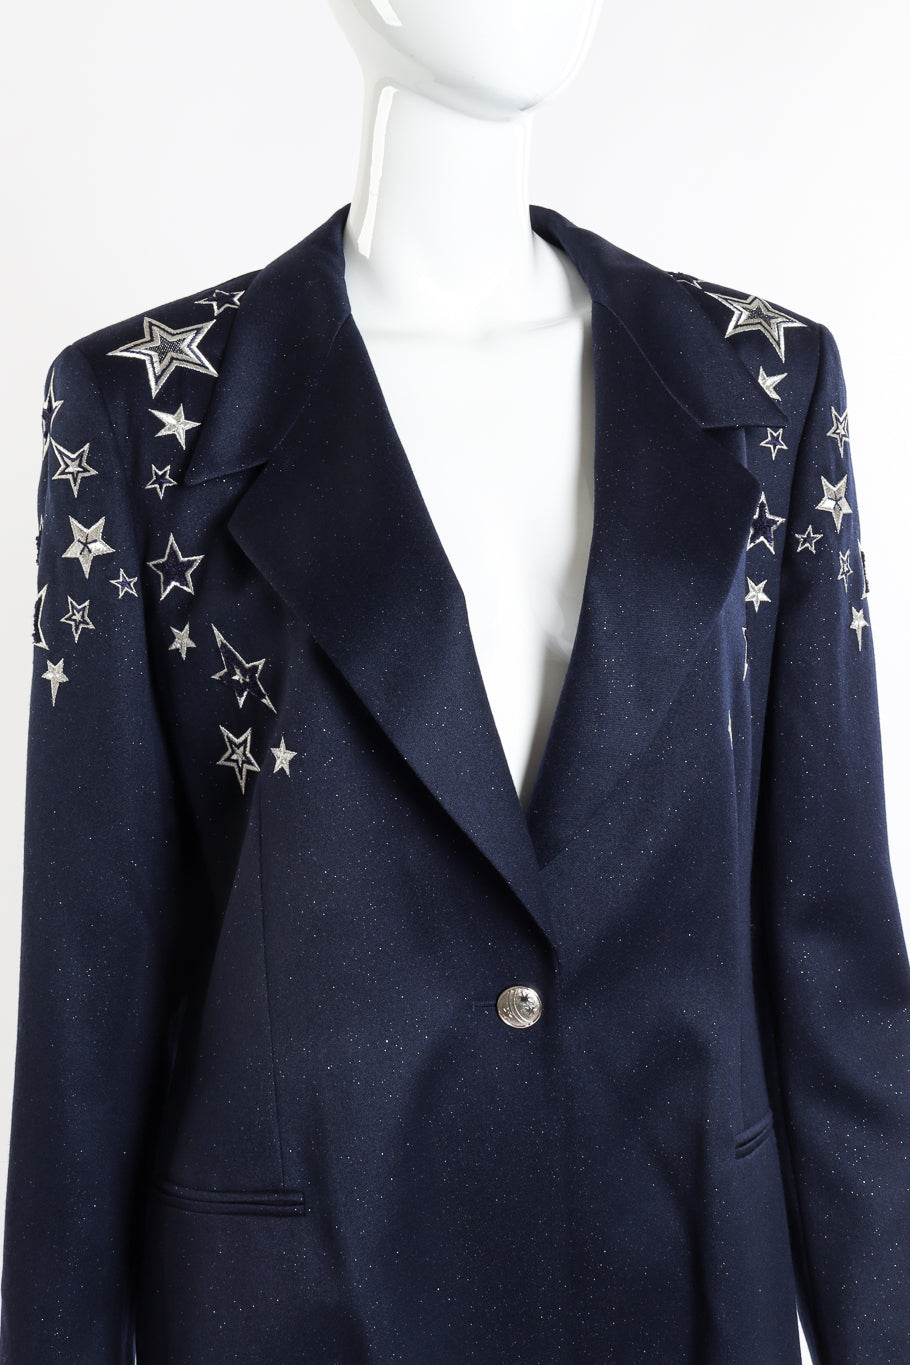 Vintage Escada Embroidered Star Glitter Wool Blazer front on mannequin closeup @recessla